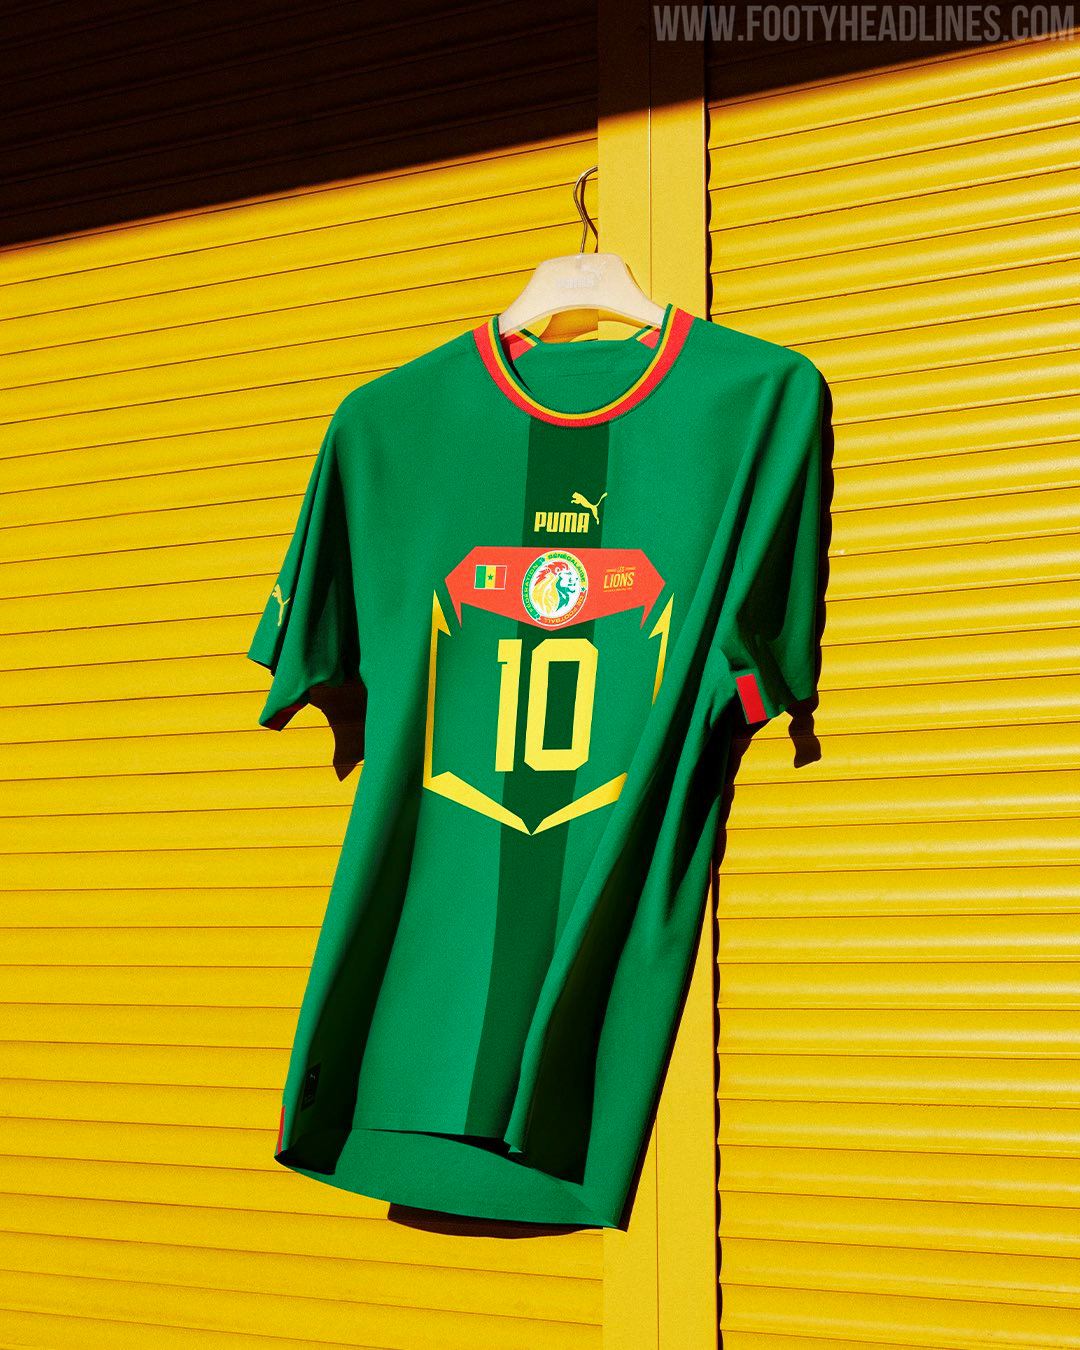 Senegal 2022 World Cup Away Kit Released - Footy Headlines